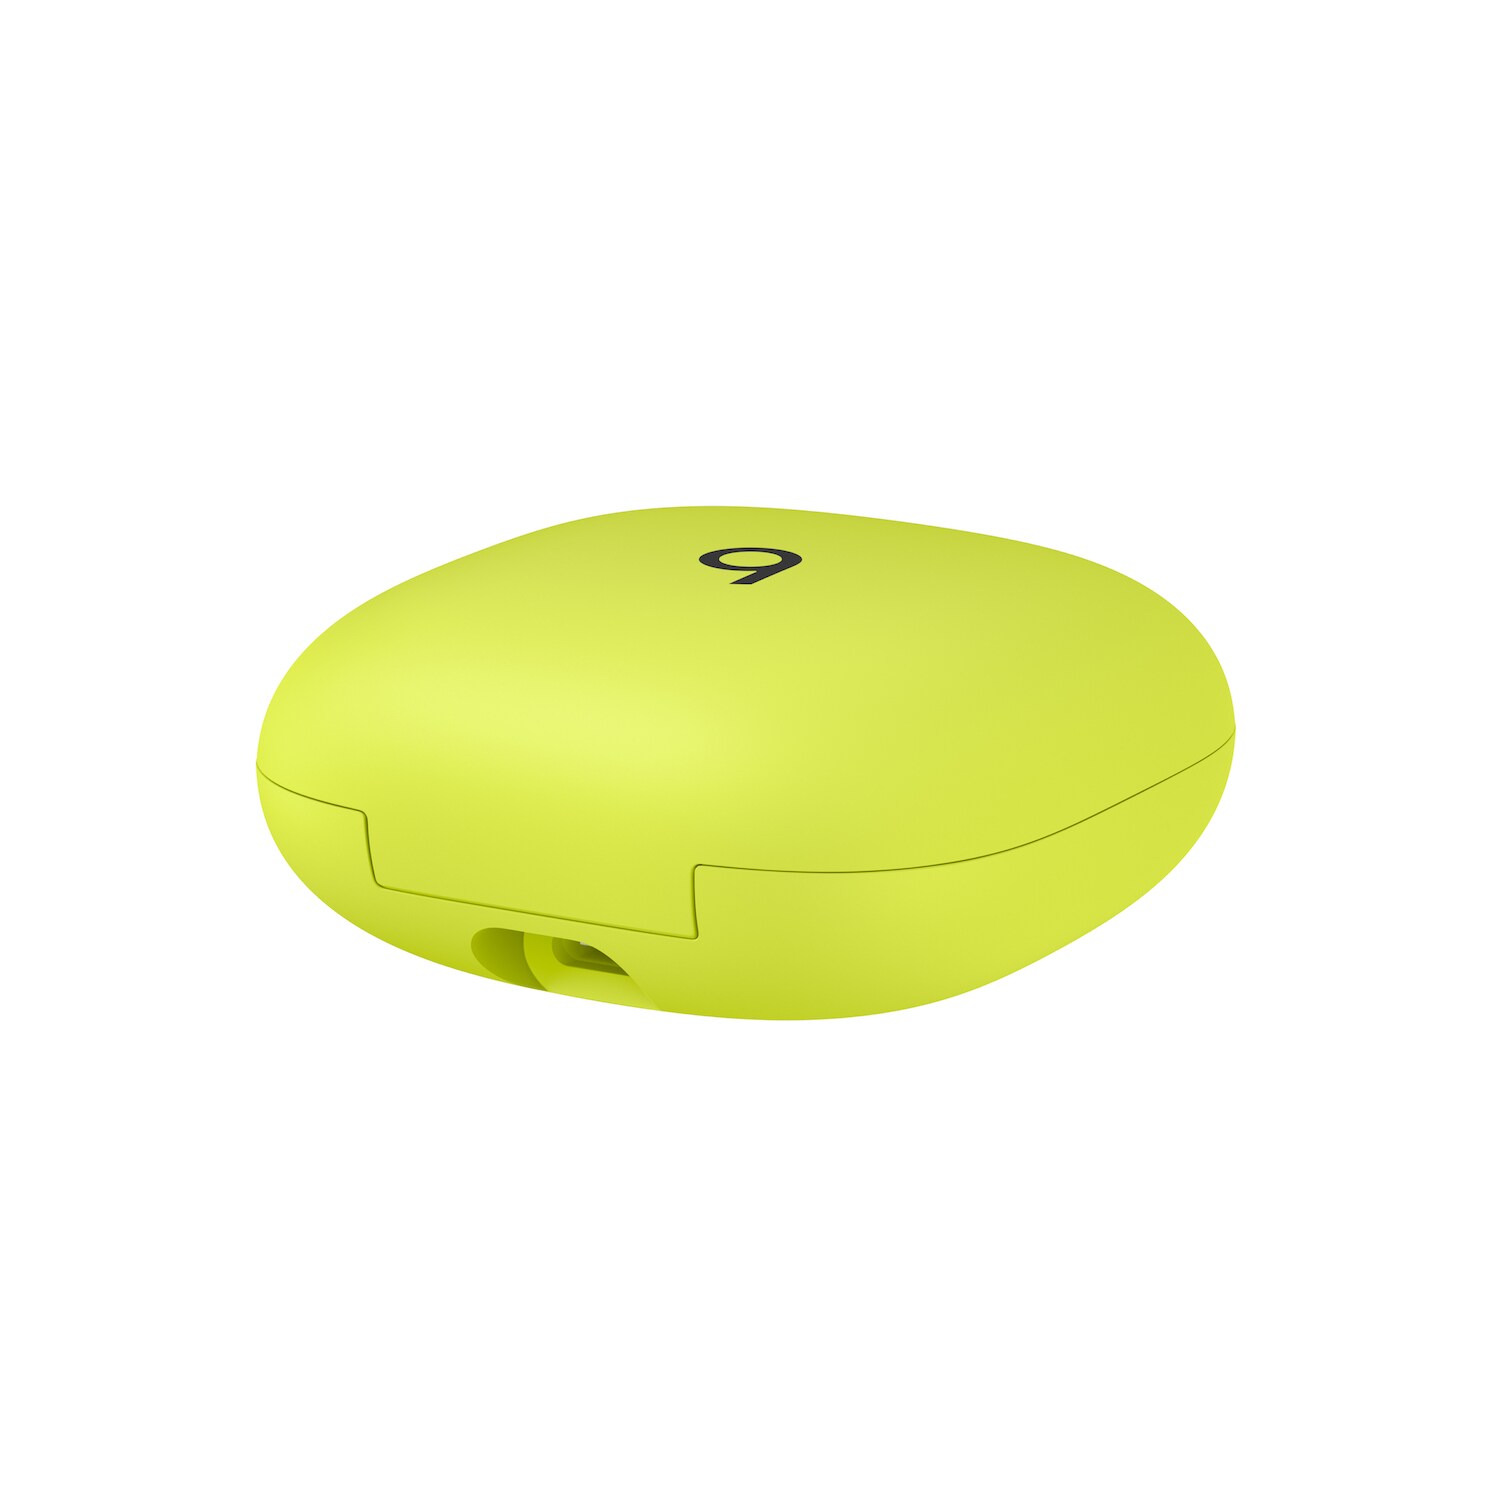 Kopfhörer Yellow In-Ear Wireless Volt Pro True Earbuds Cyberport Beats ++ Fit